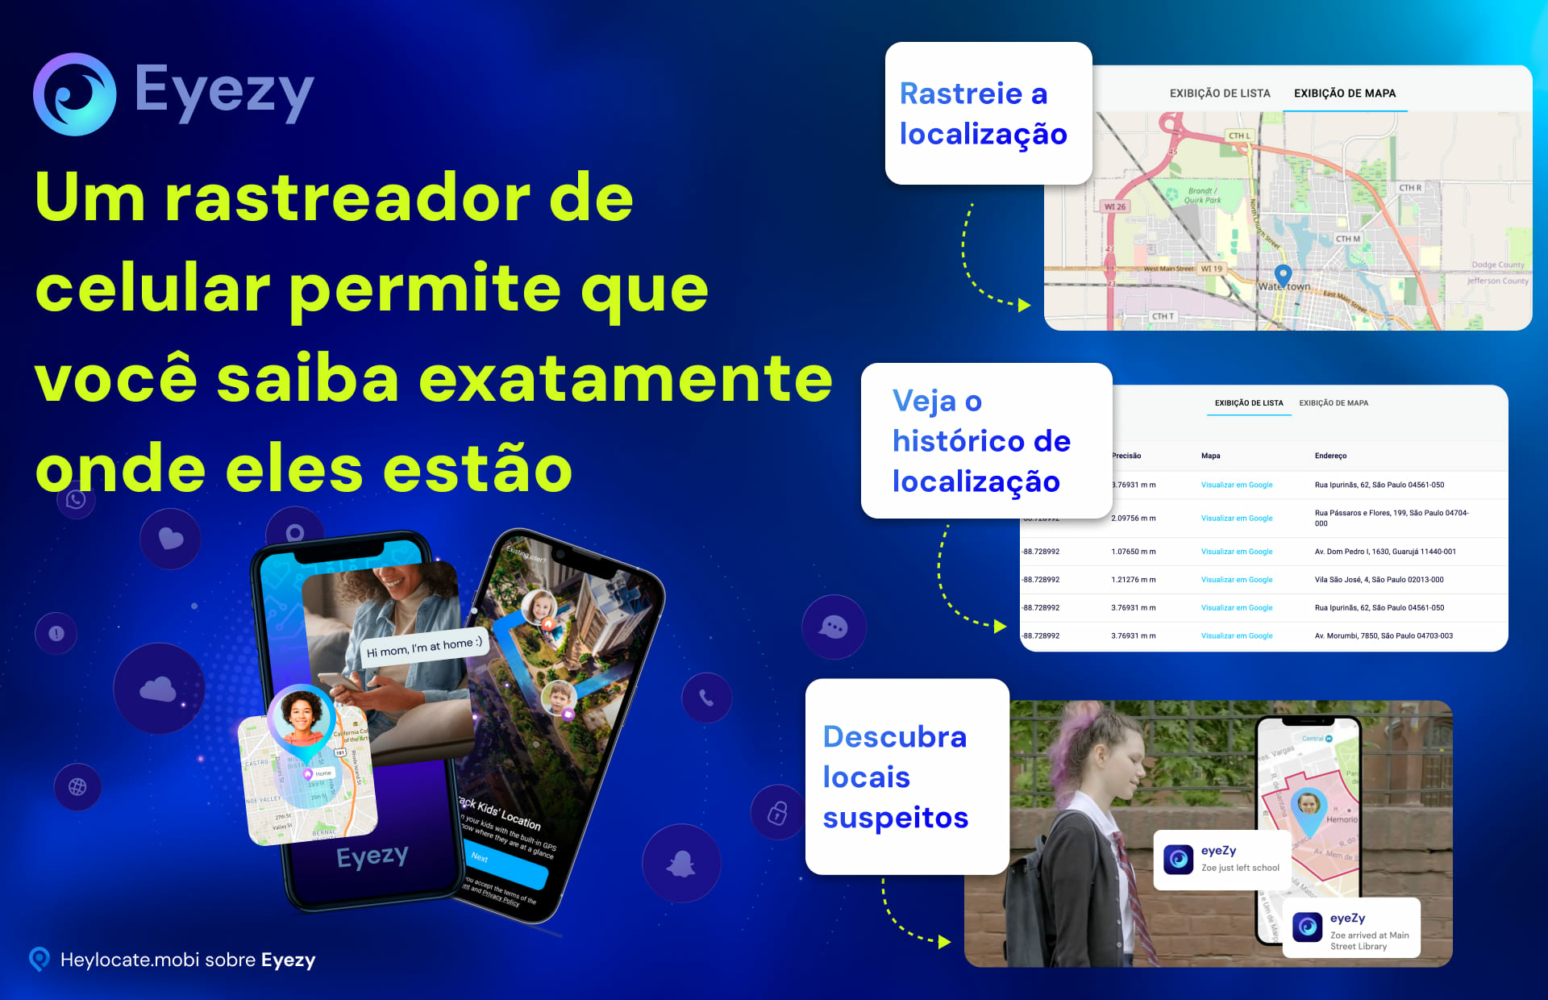 Demonstração do recurso de rastreamento de celular da Eyezy, com imagens de rastreamento da localização de alguém, visualização do histórico de localização e descoberta de locais suspeitos em uma interface de mapa.